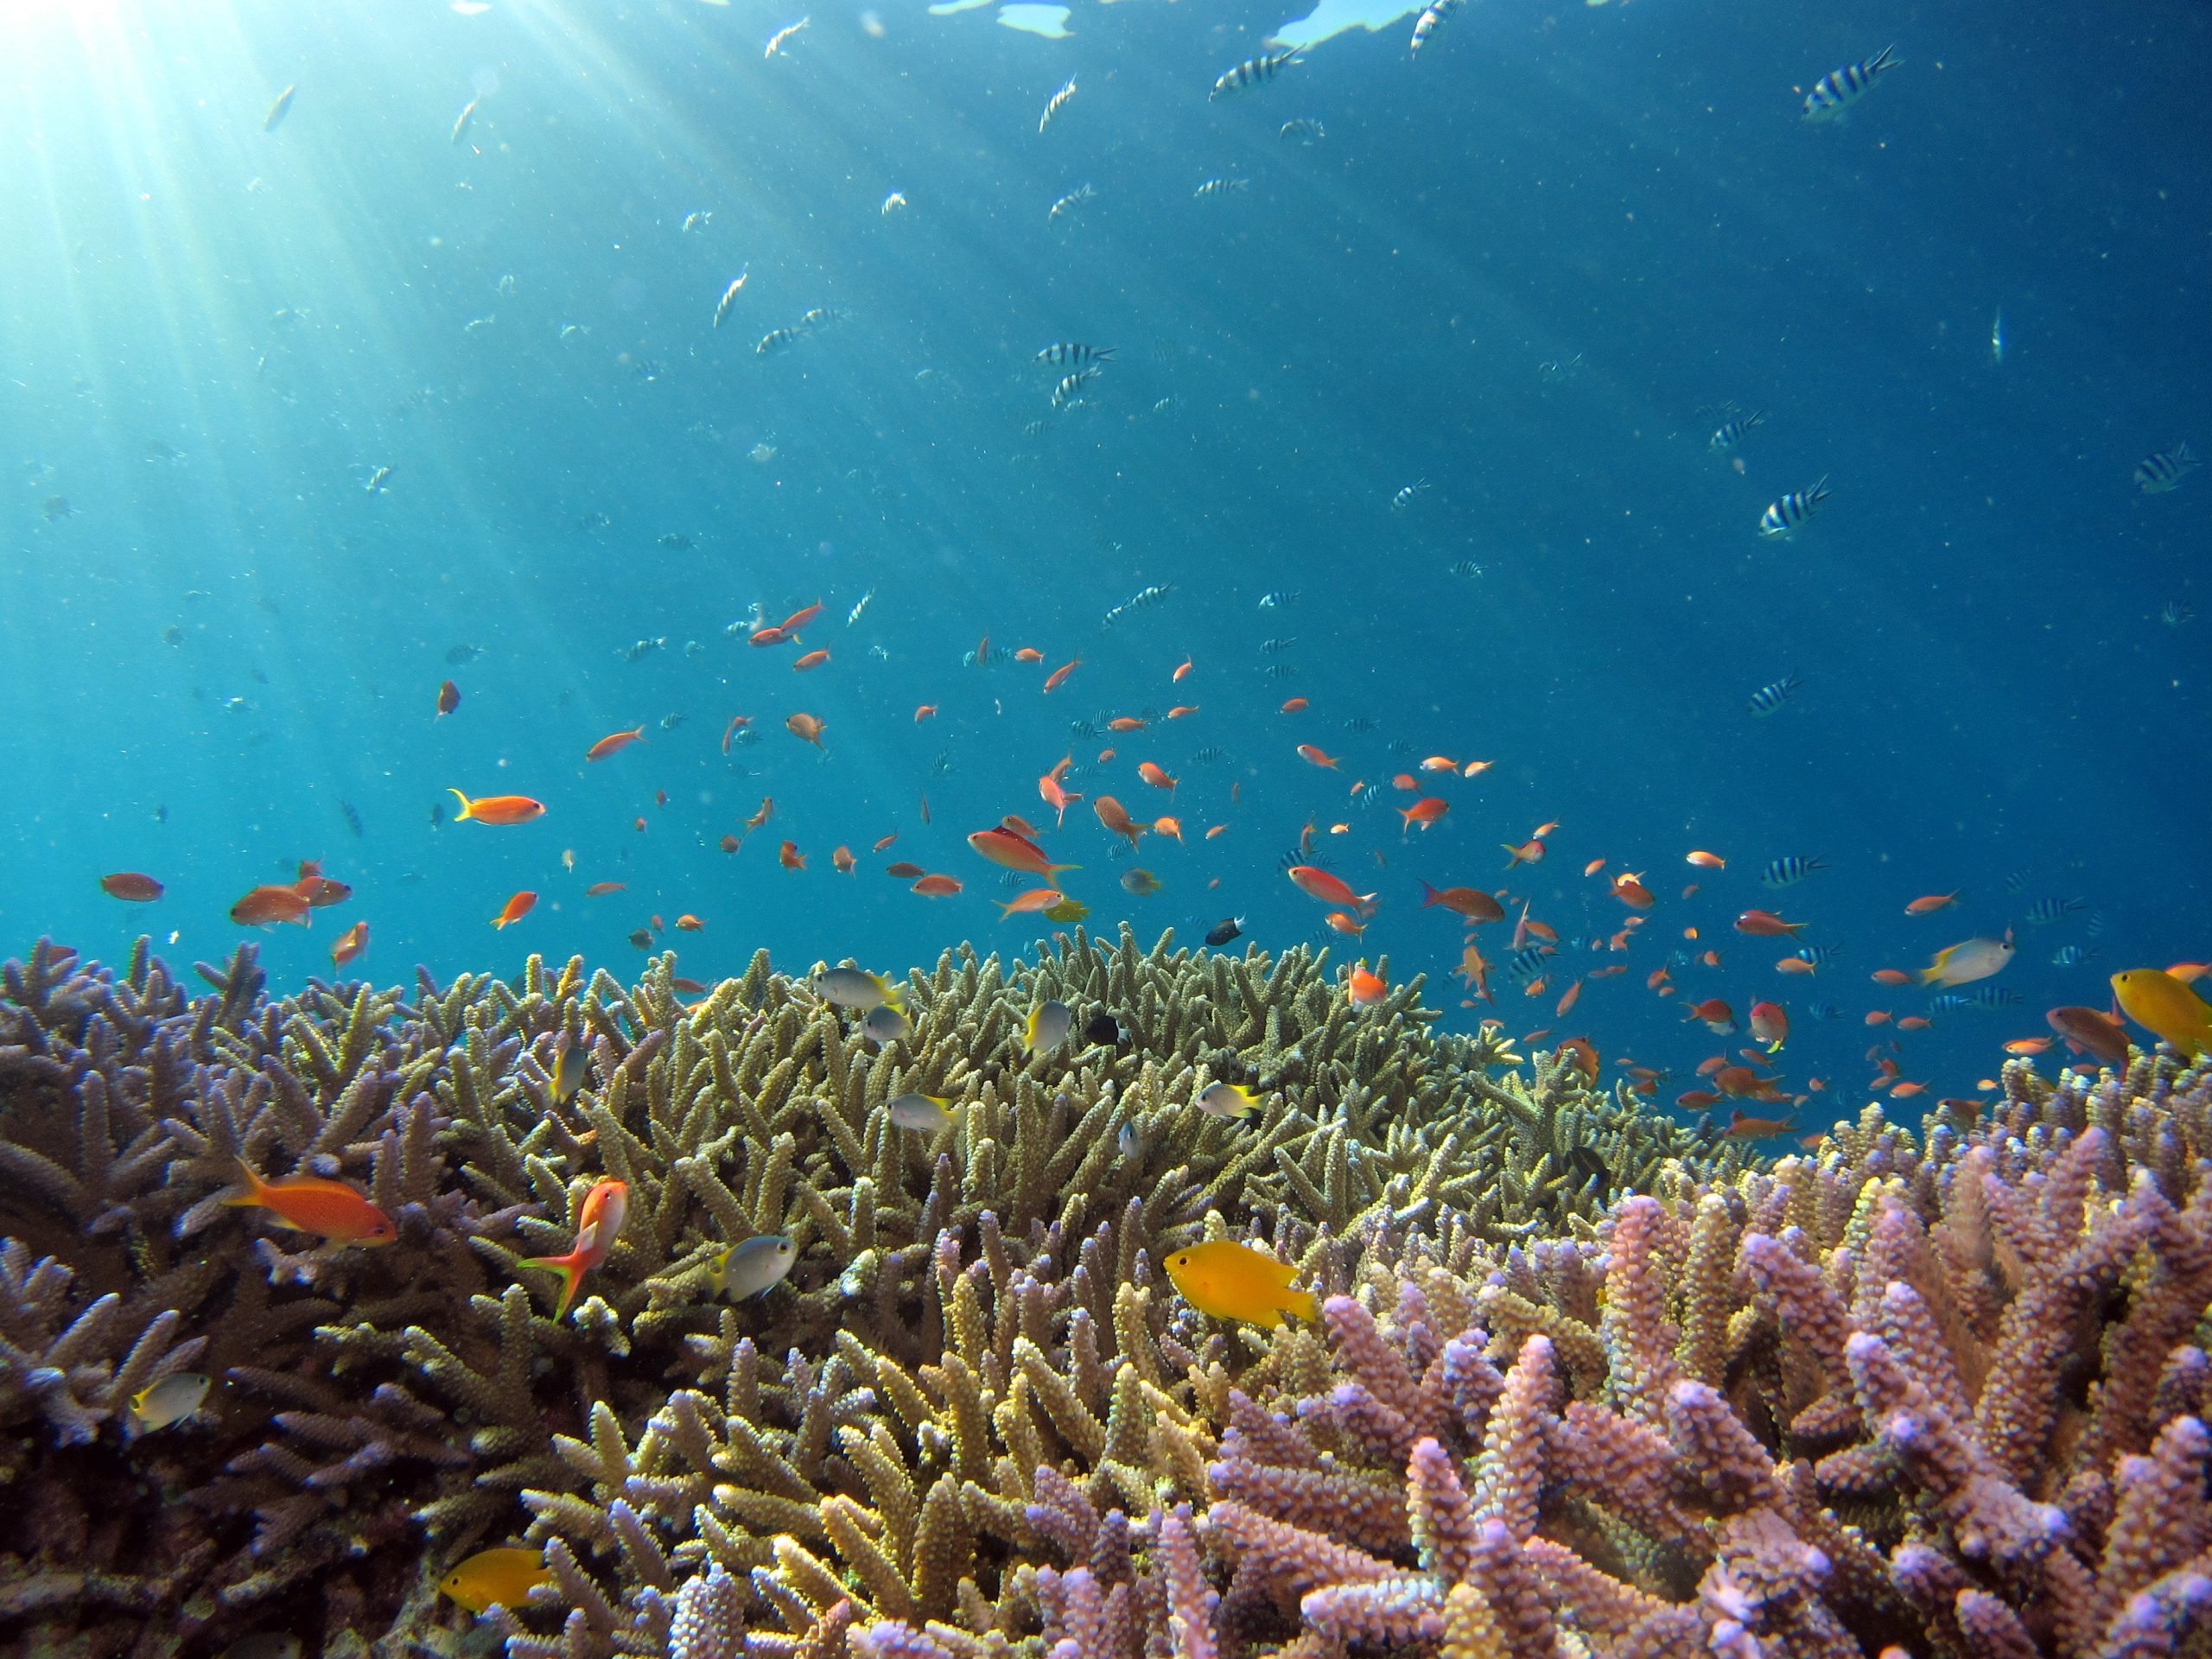 Pemerintah luncurkan program restorasi terumbu karang padat karya